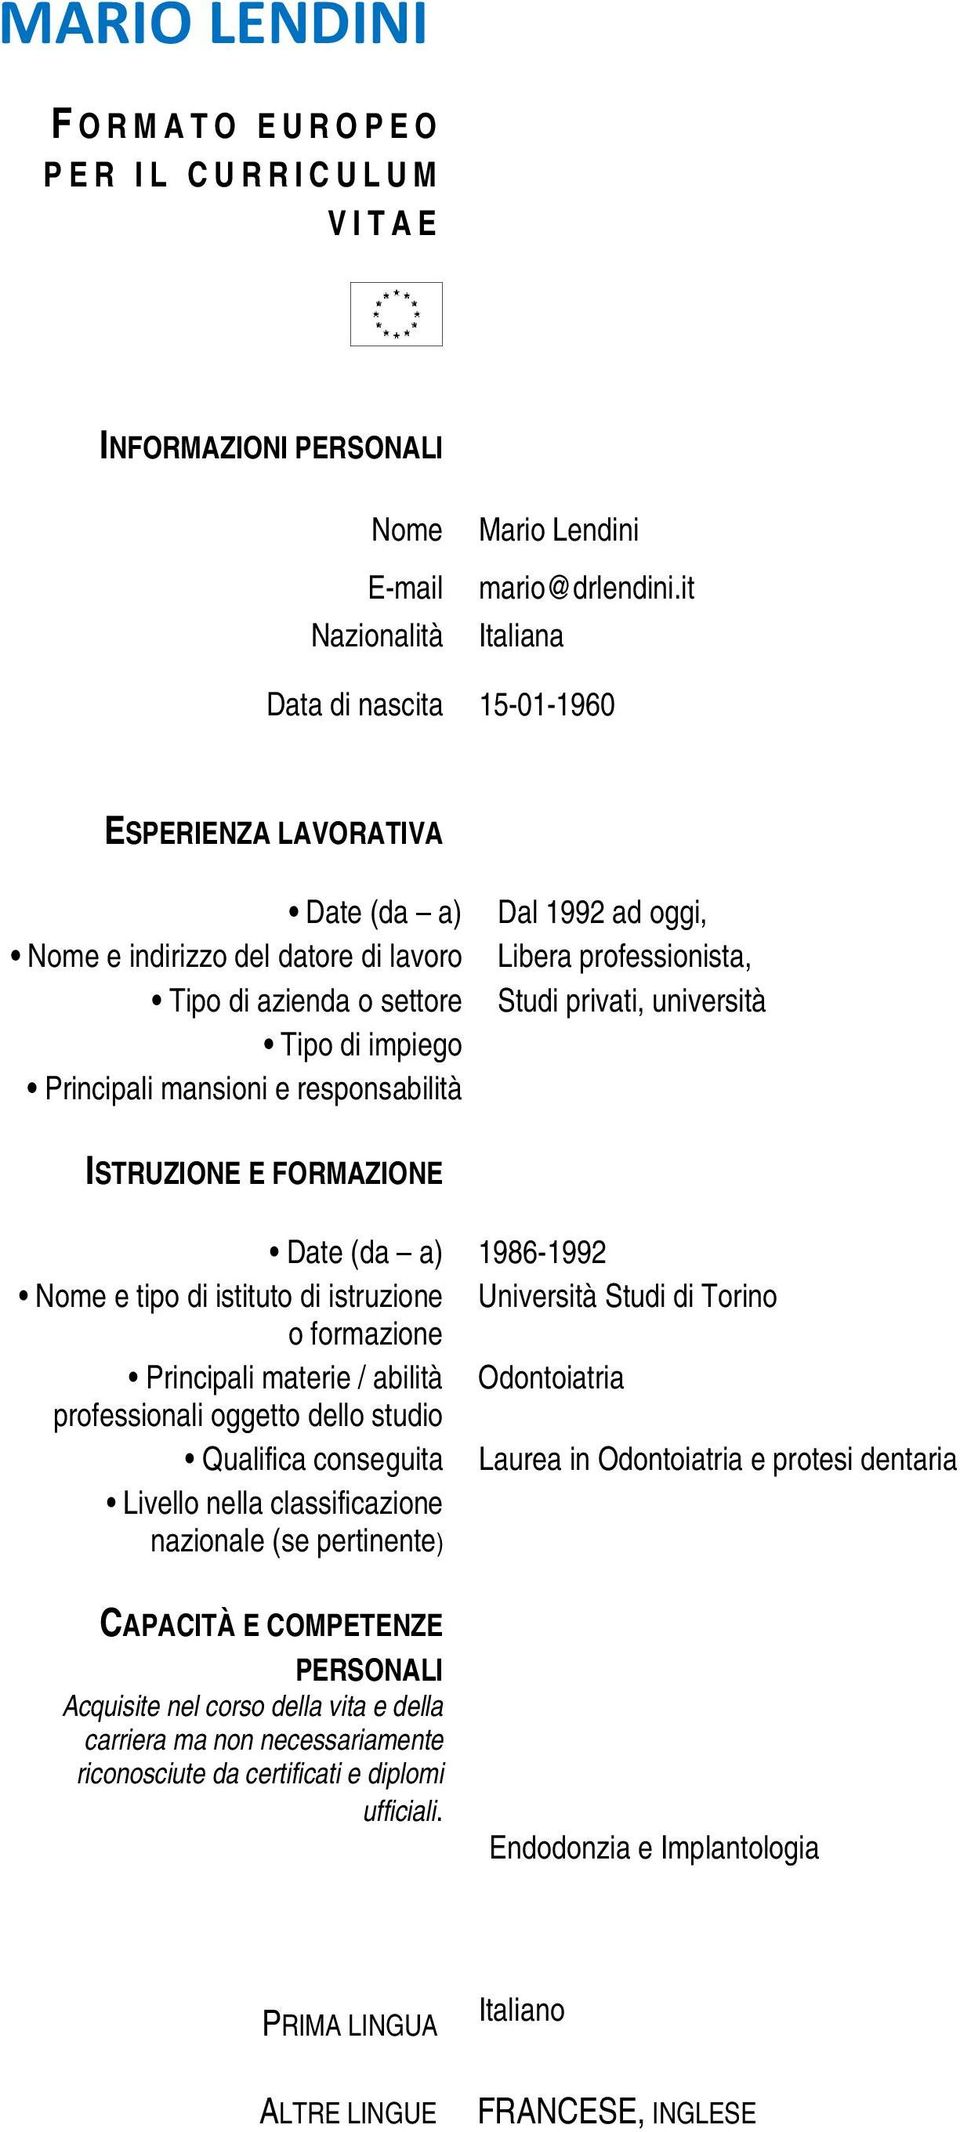 privati, università ISTRUZIONE E FORMAZIONE Date (da a) 1986-1992 Nome e tipo di istituto di istruzione Università Studi di Torino o formazione Principali materie / abilità Odontoiatria professionali